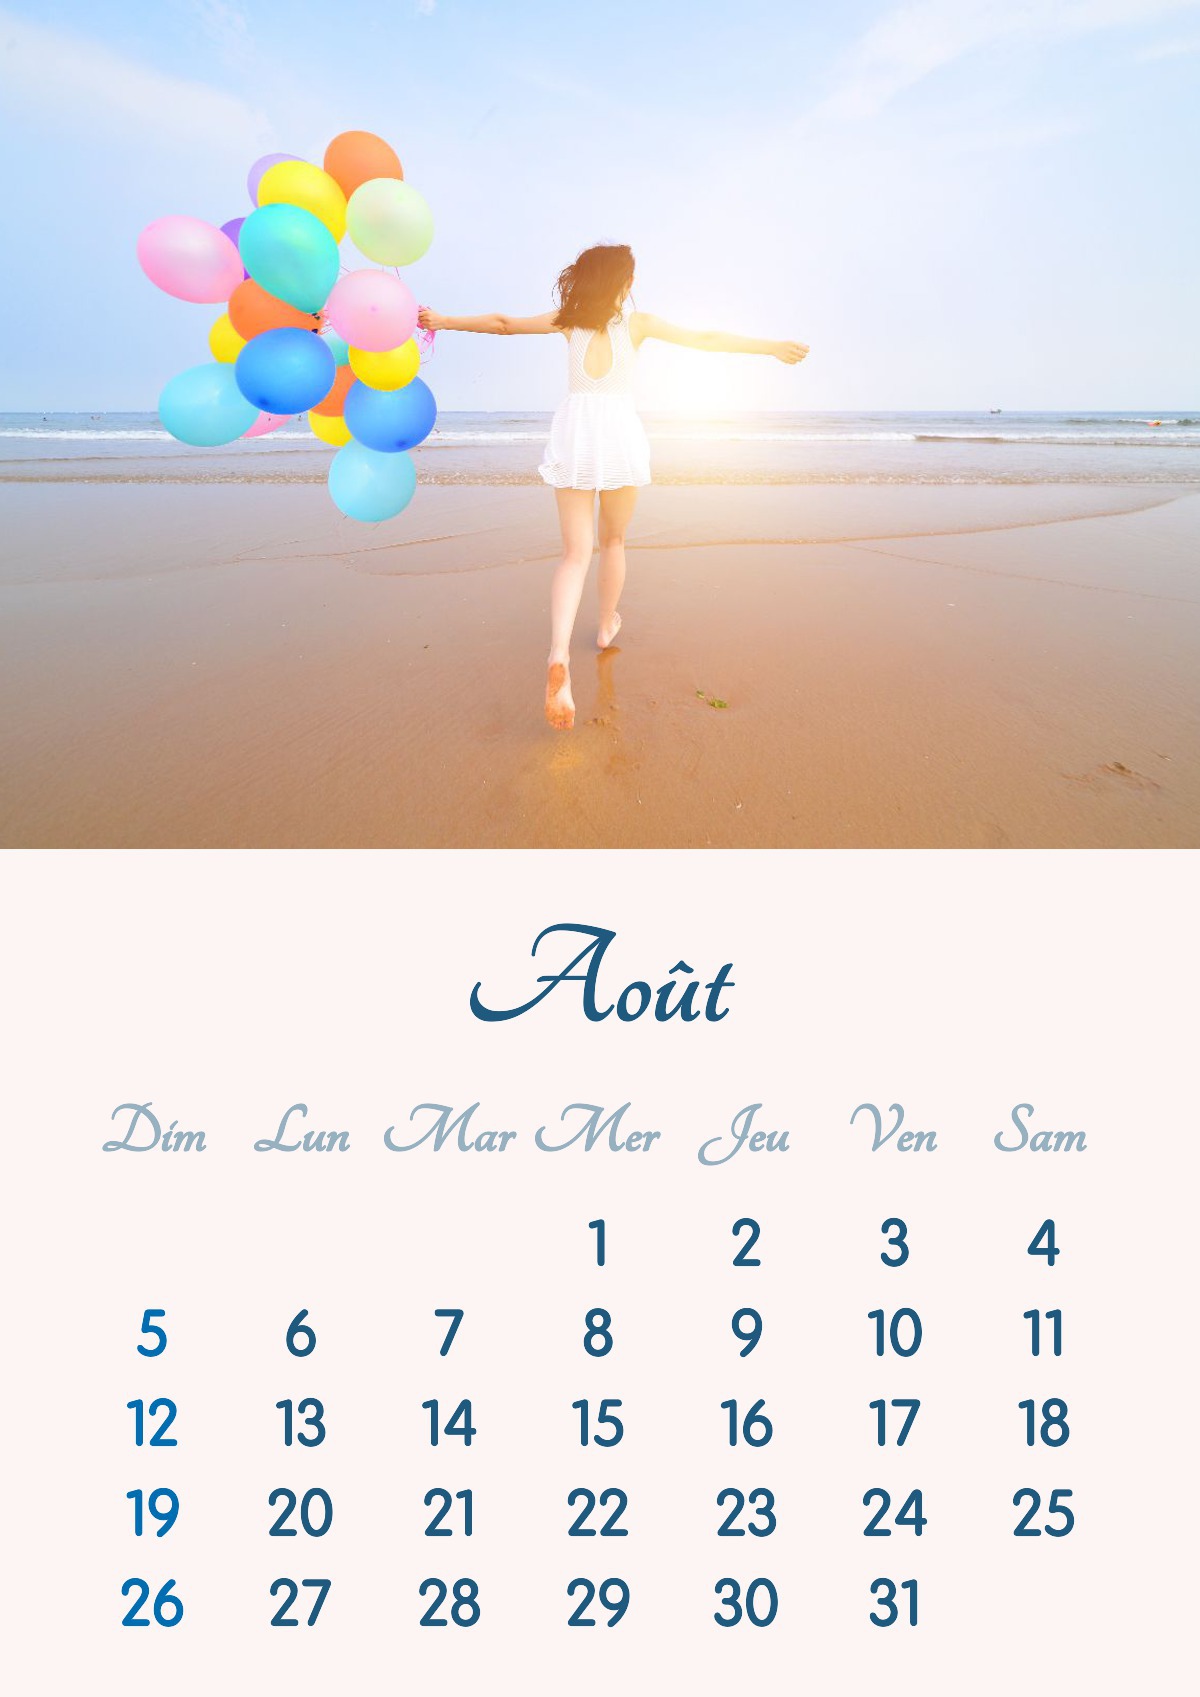 Kalenderen for august 2018 kan skrives ut i A4-format Fotomontasje